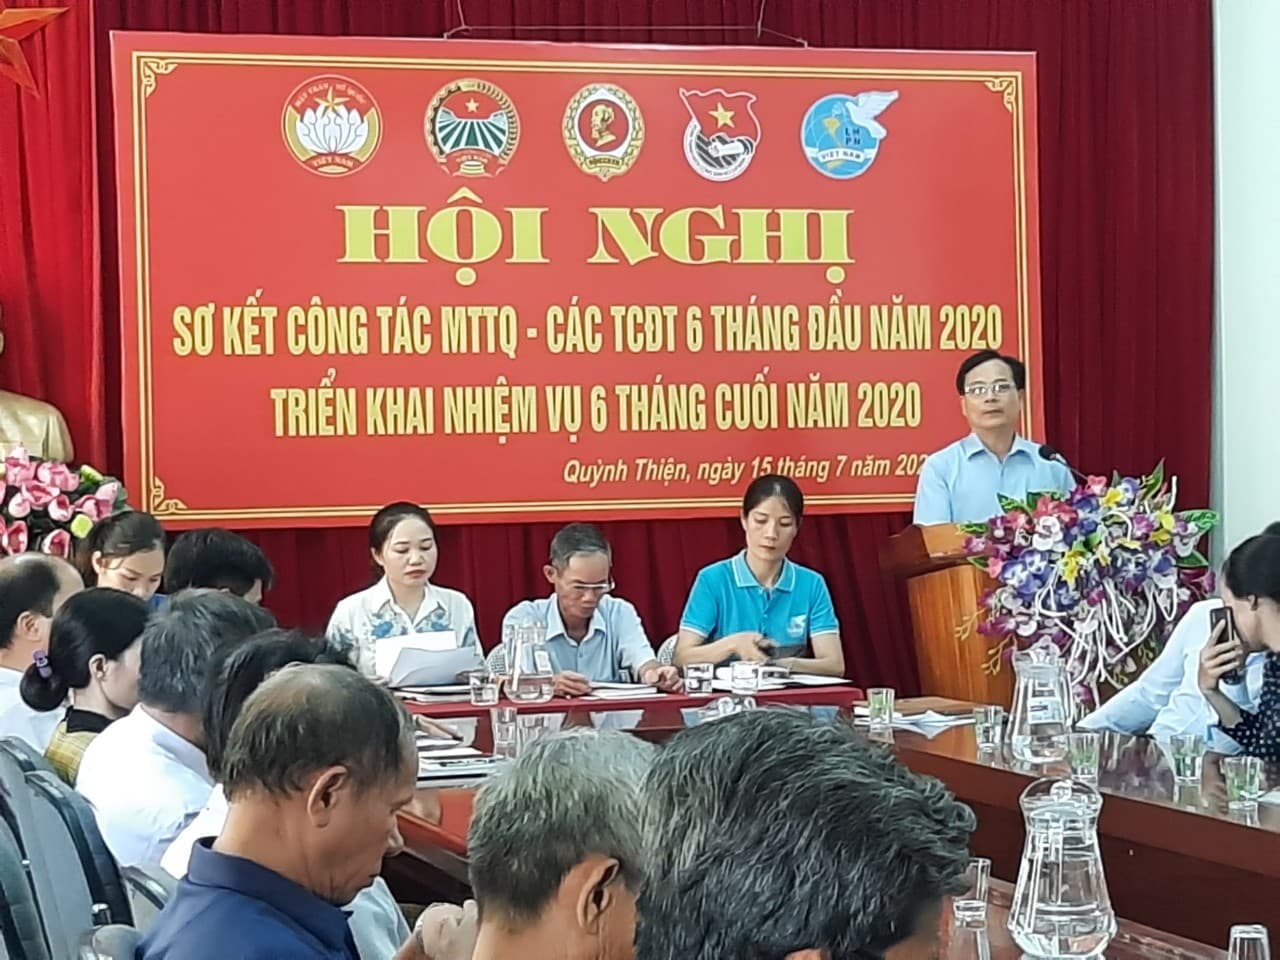 Ủy ban MTTQ và các đoàn thể phường Quỳnh Thiện tổ chức Hội nghị sơ kết công tác Mặt trận 6 tháng đầu năm, bàn phương hướng, nhiệm vụ 6 tháng cuối năm 2020